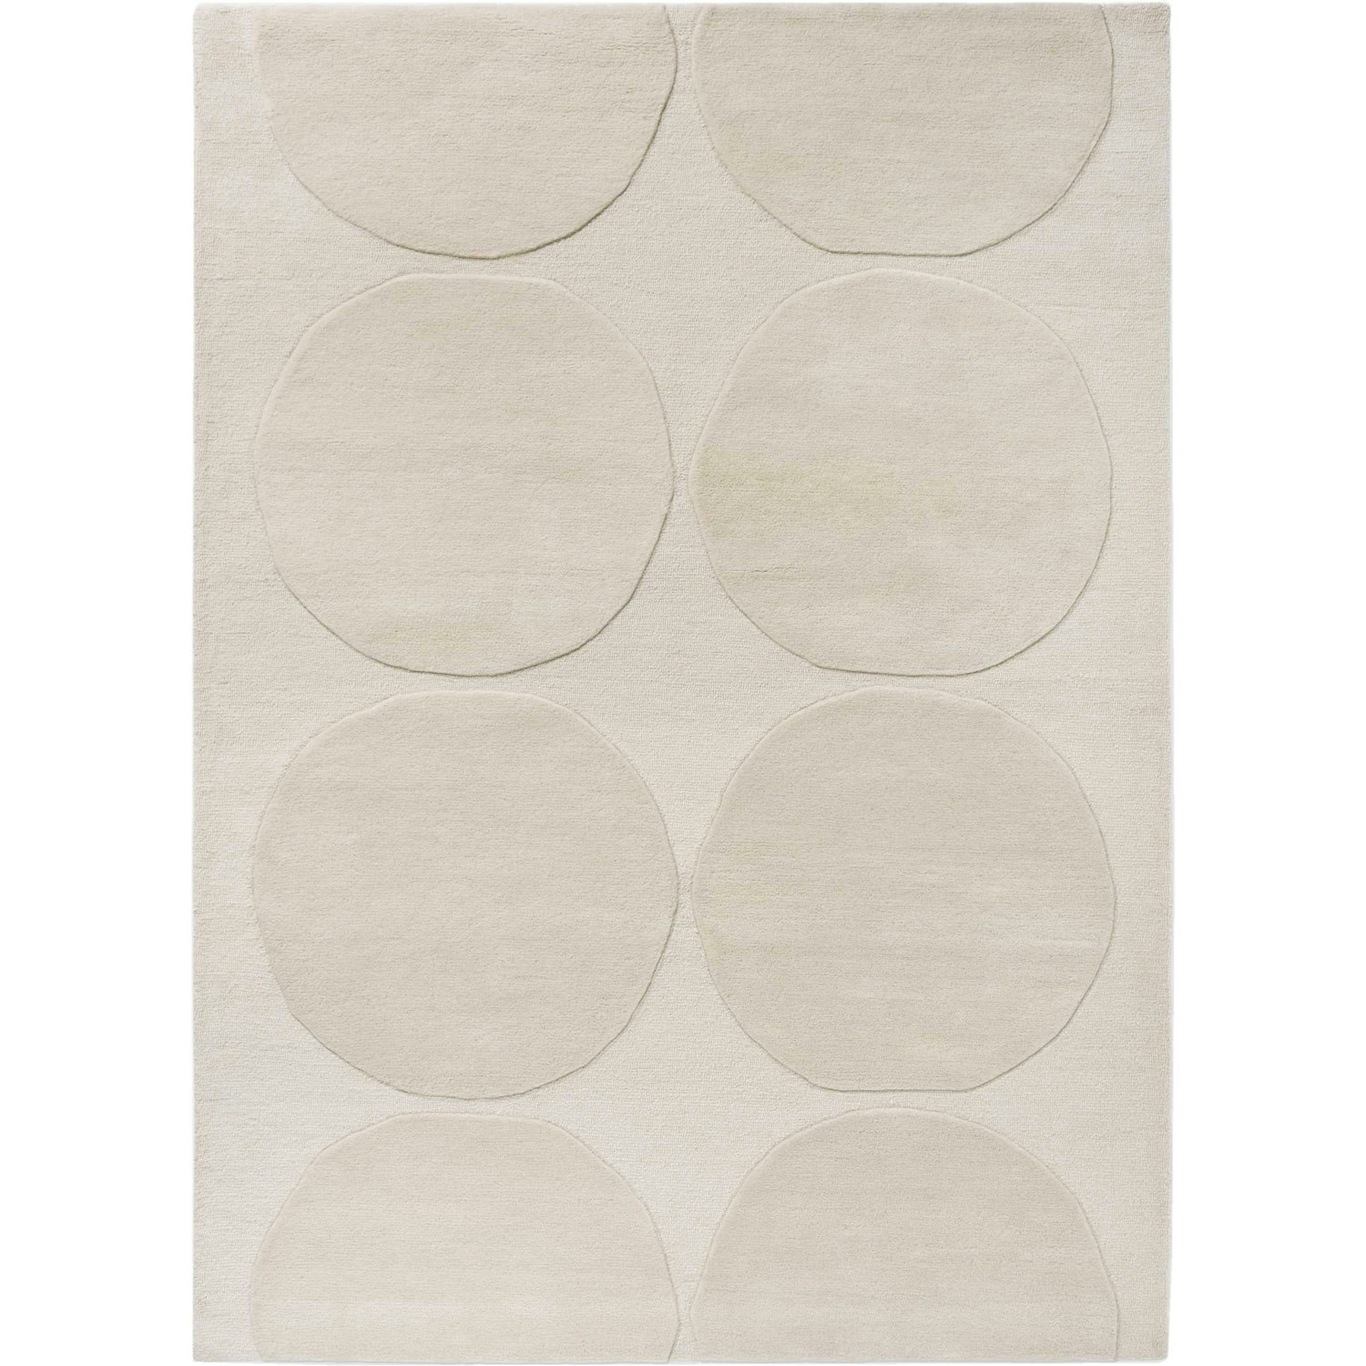 Marimekko Isot Kivet Teppich 170x240 cm, Natural White